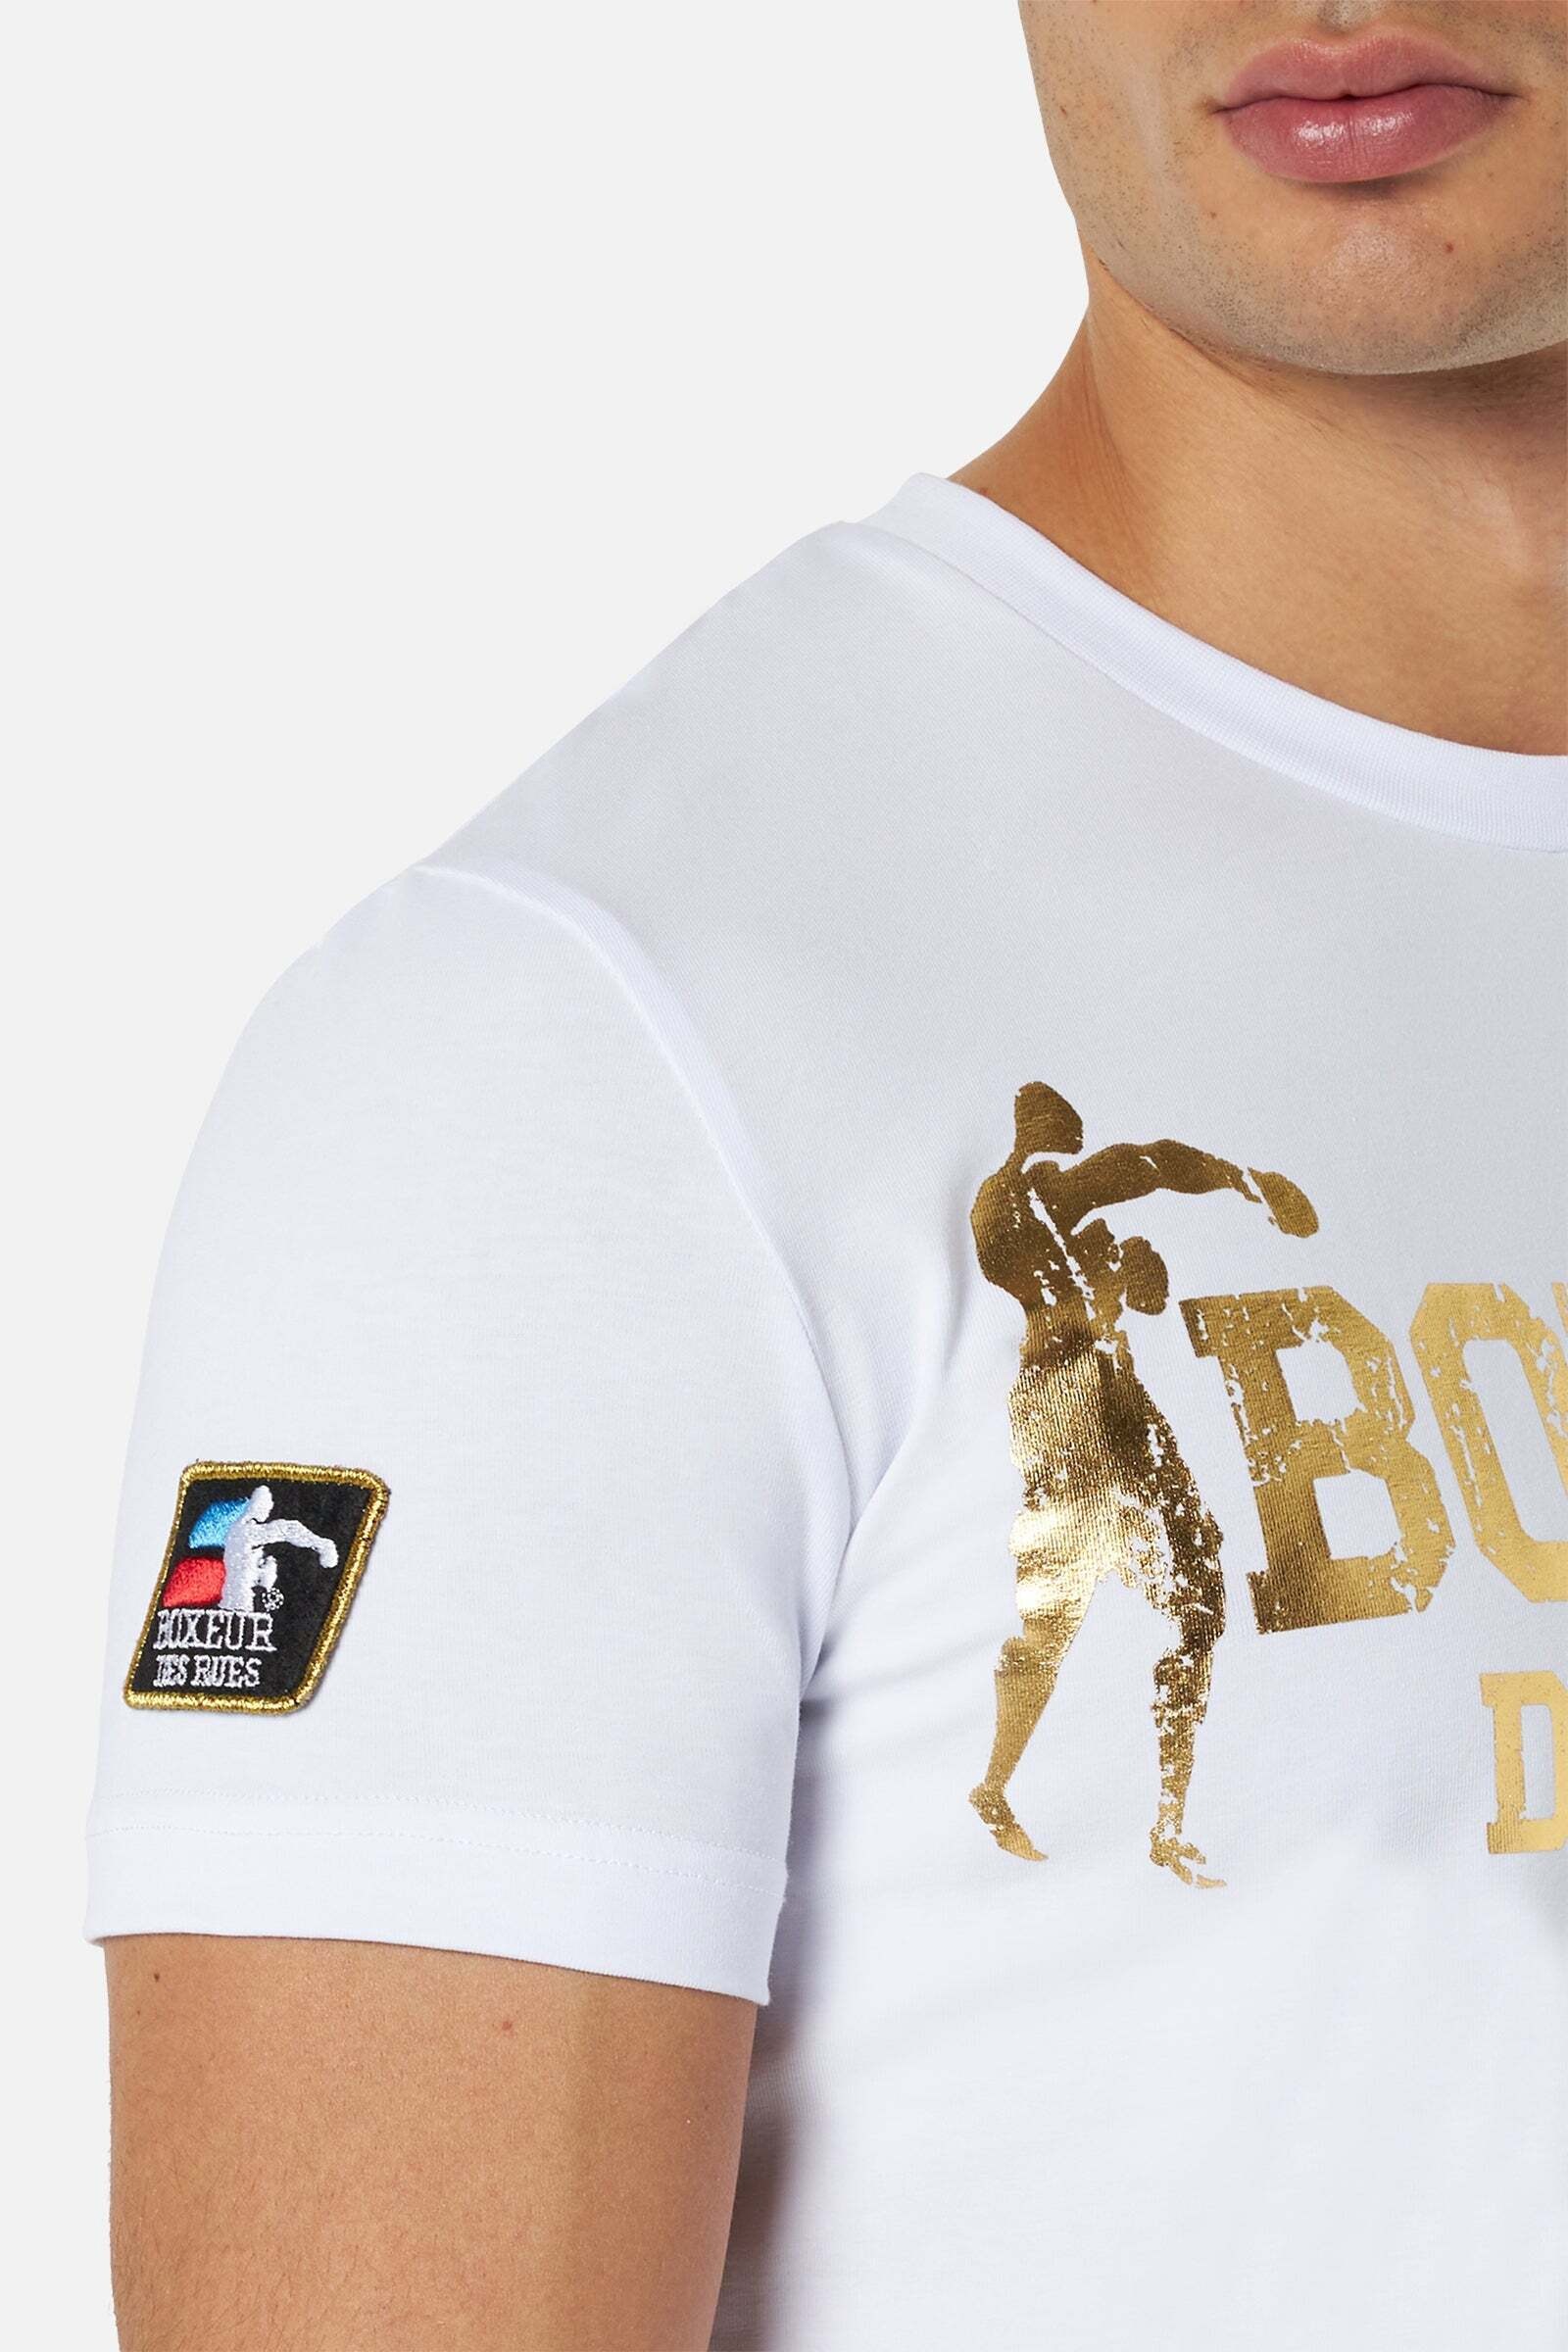 BOXEUR DES RUES T-Shirt »T-Shirts T-Shirt Boxeur Street 2«